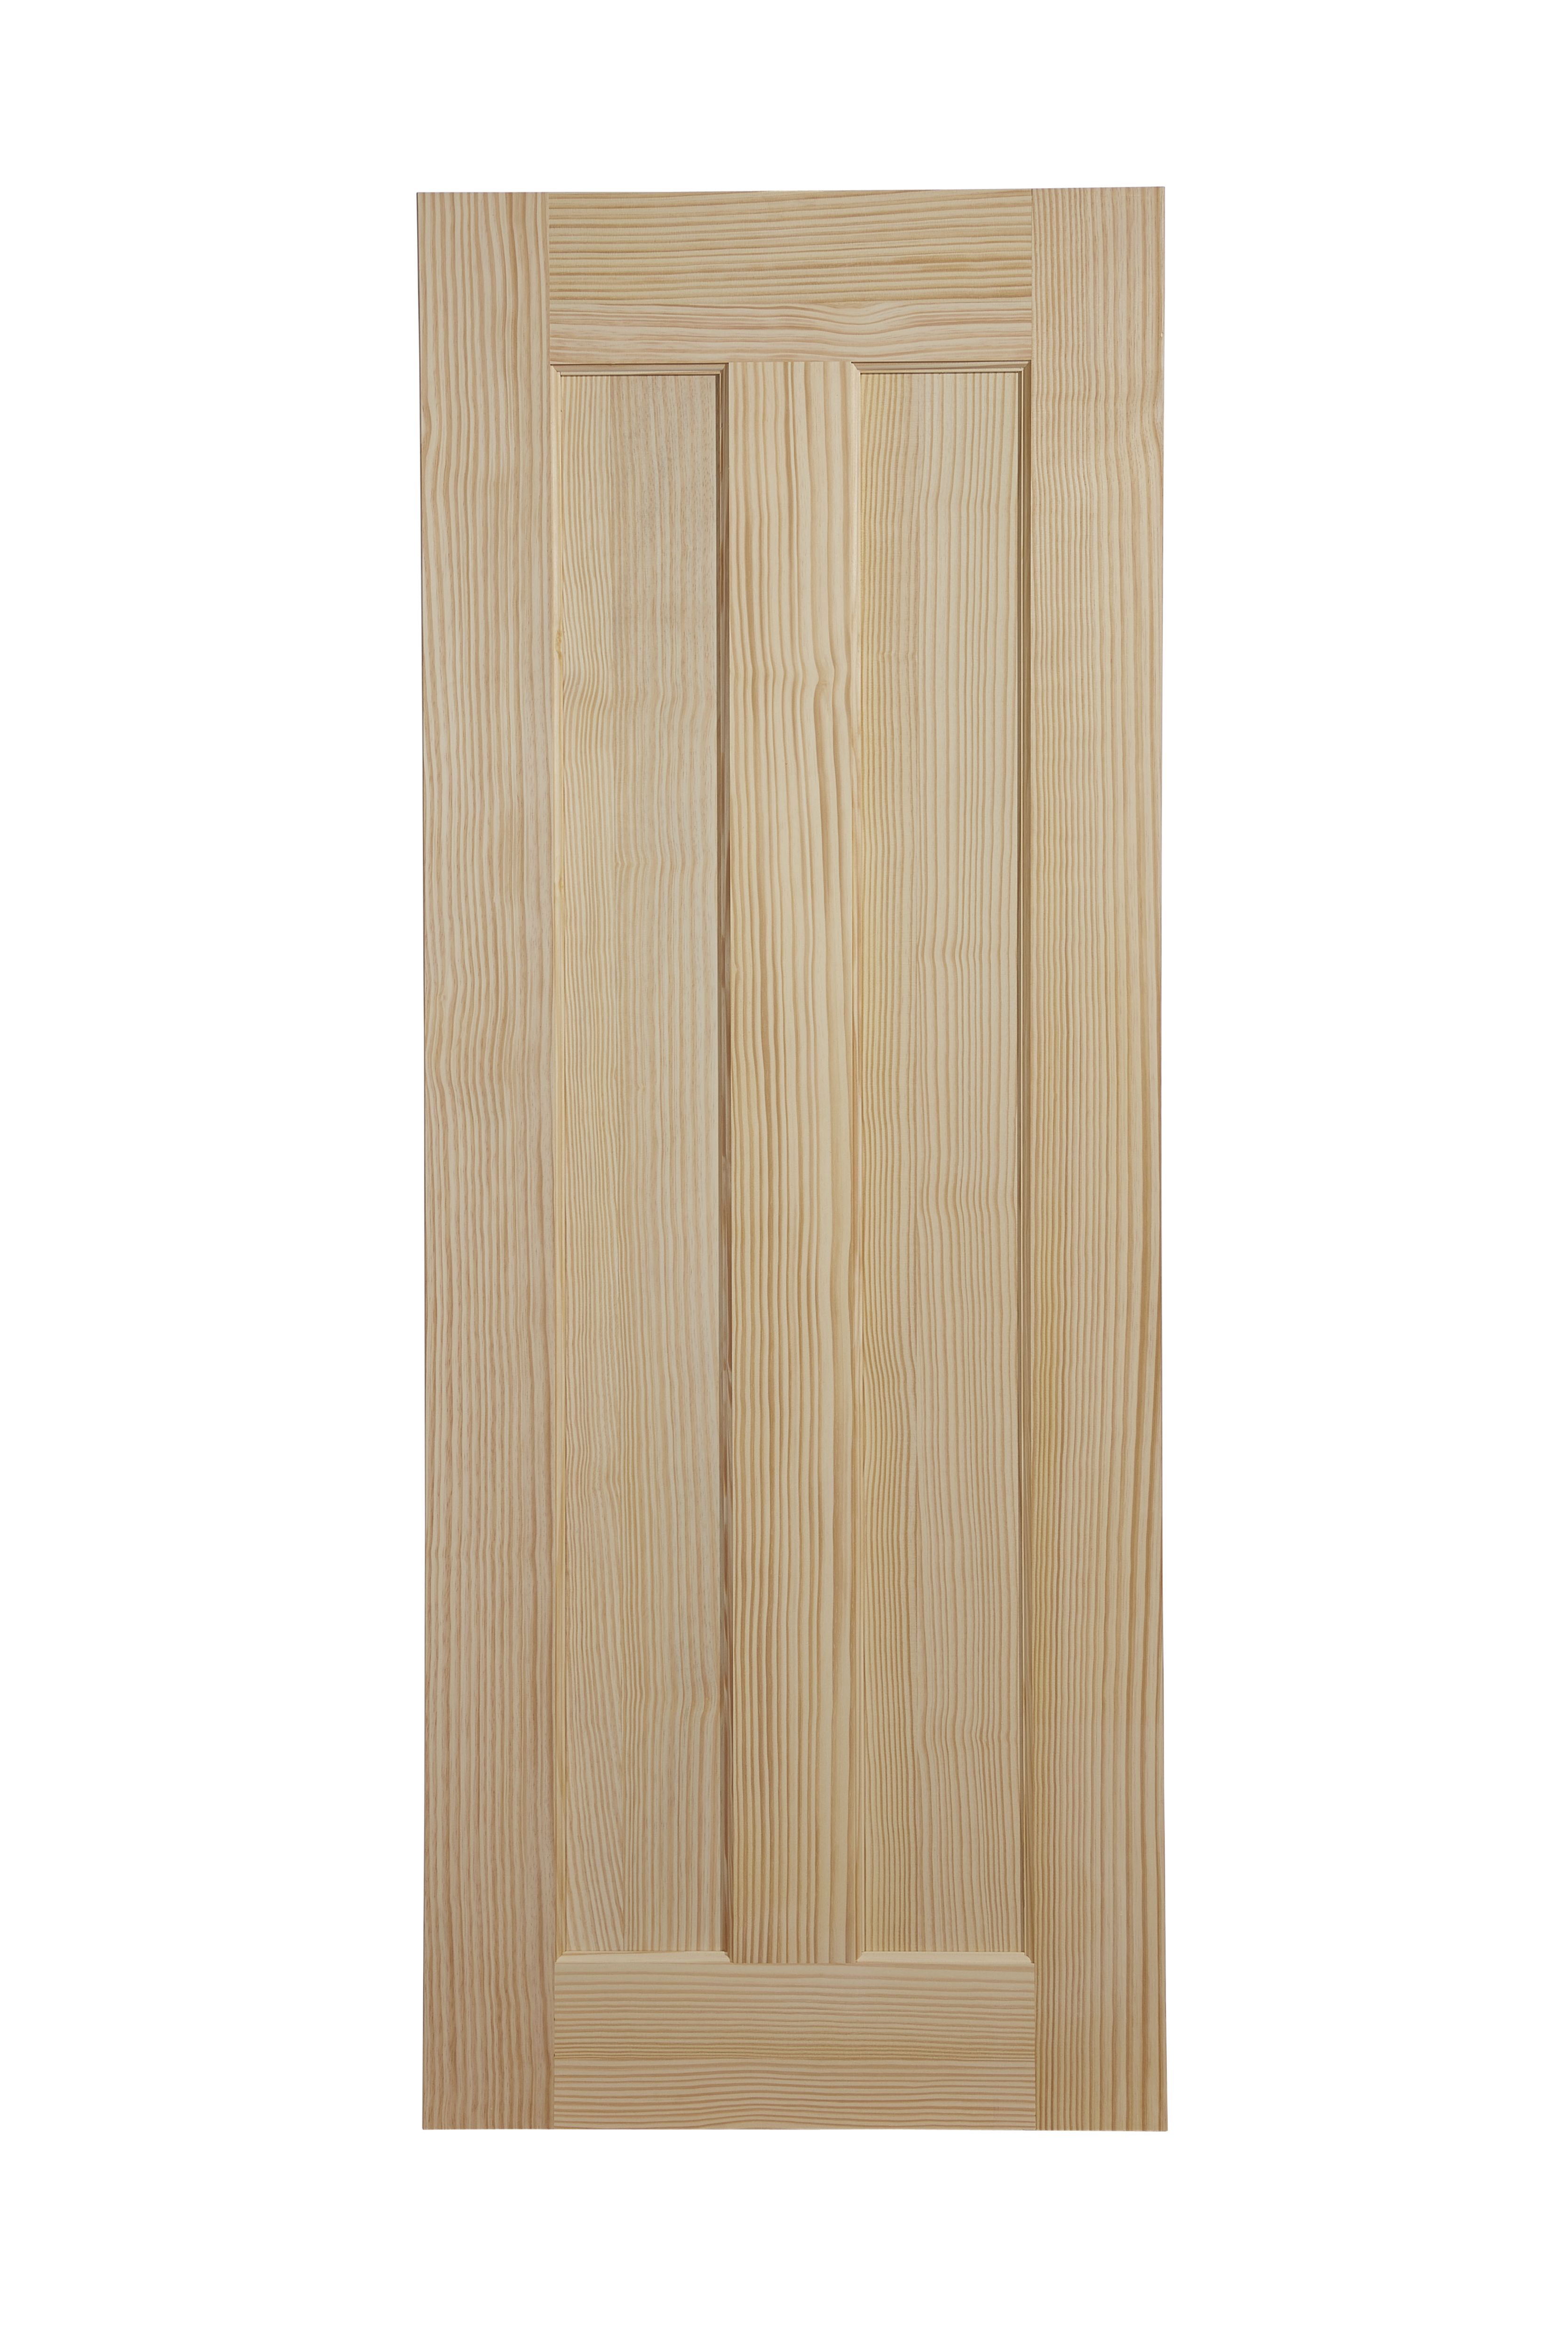 Vertical 2 panel Unglazed Internal Door, (H)1981mm (W)838mm (T)35mm